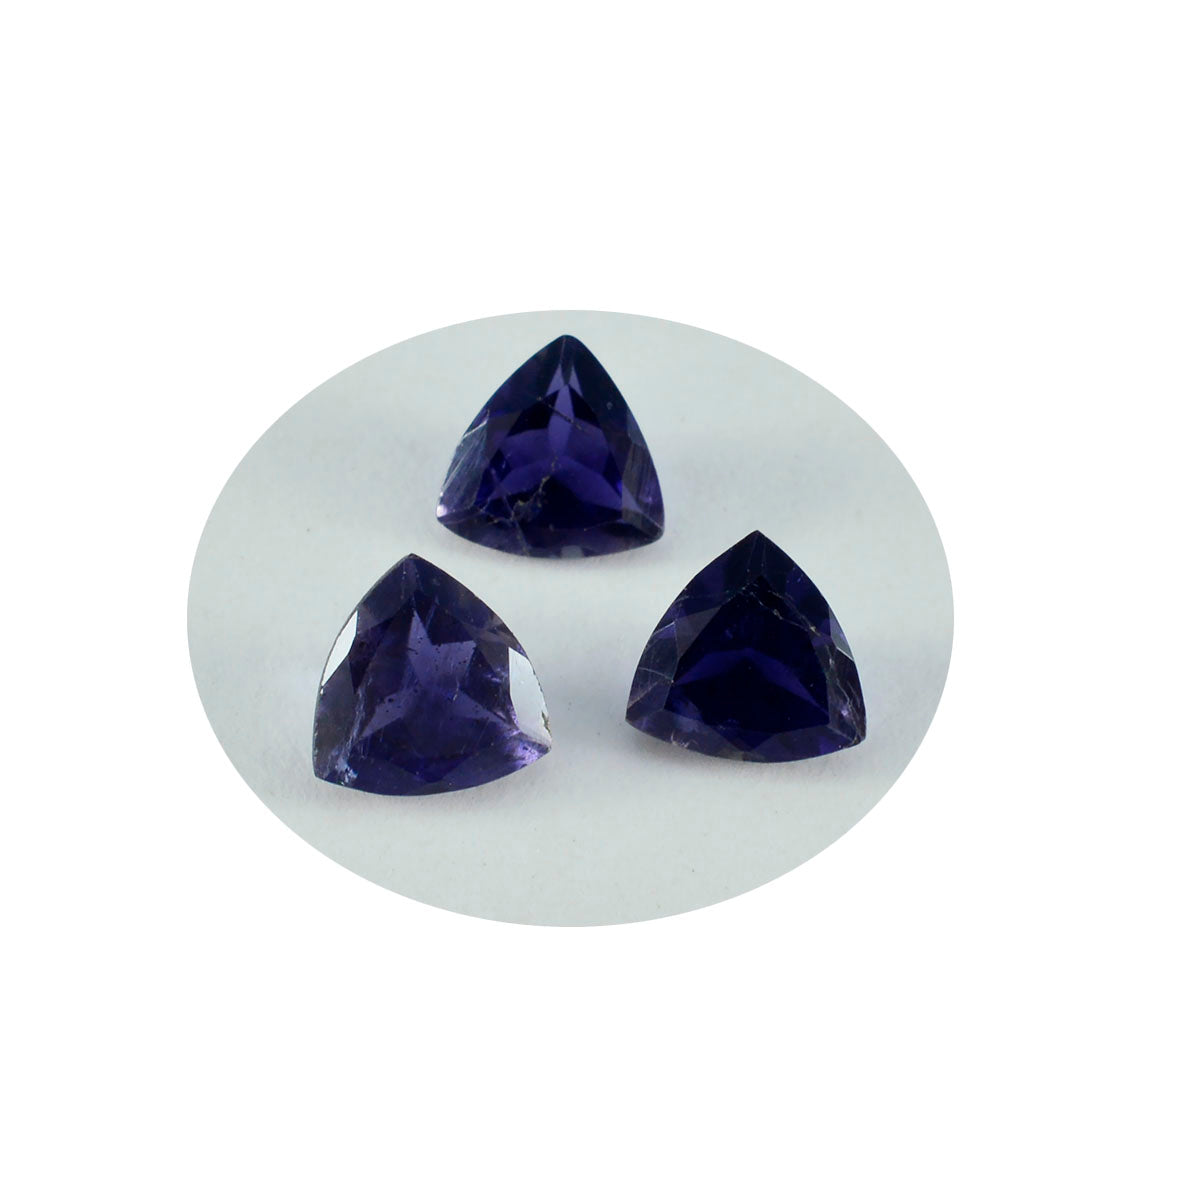 Riyogems 1PC Blue Iolite Faceted 13x13 mm Trillion Shape startling Quality Loose Gems